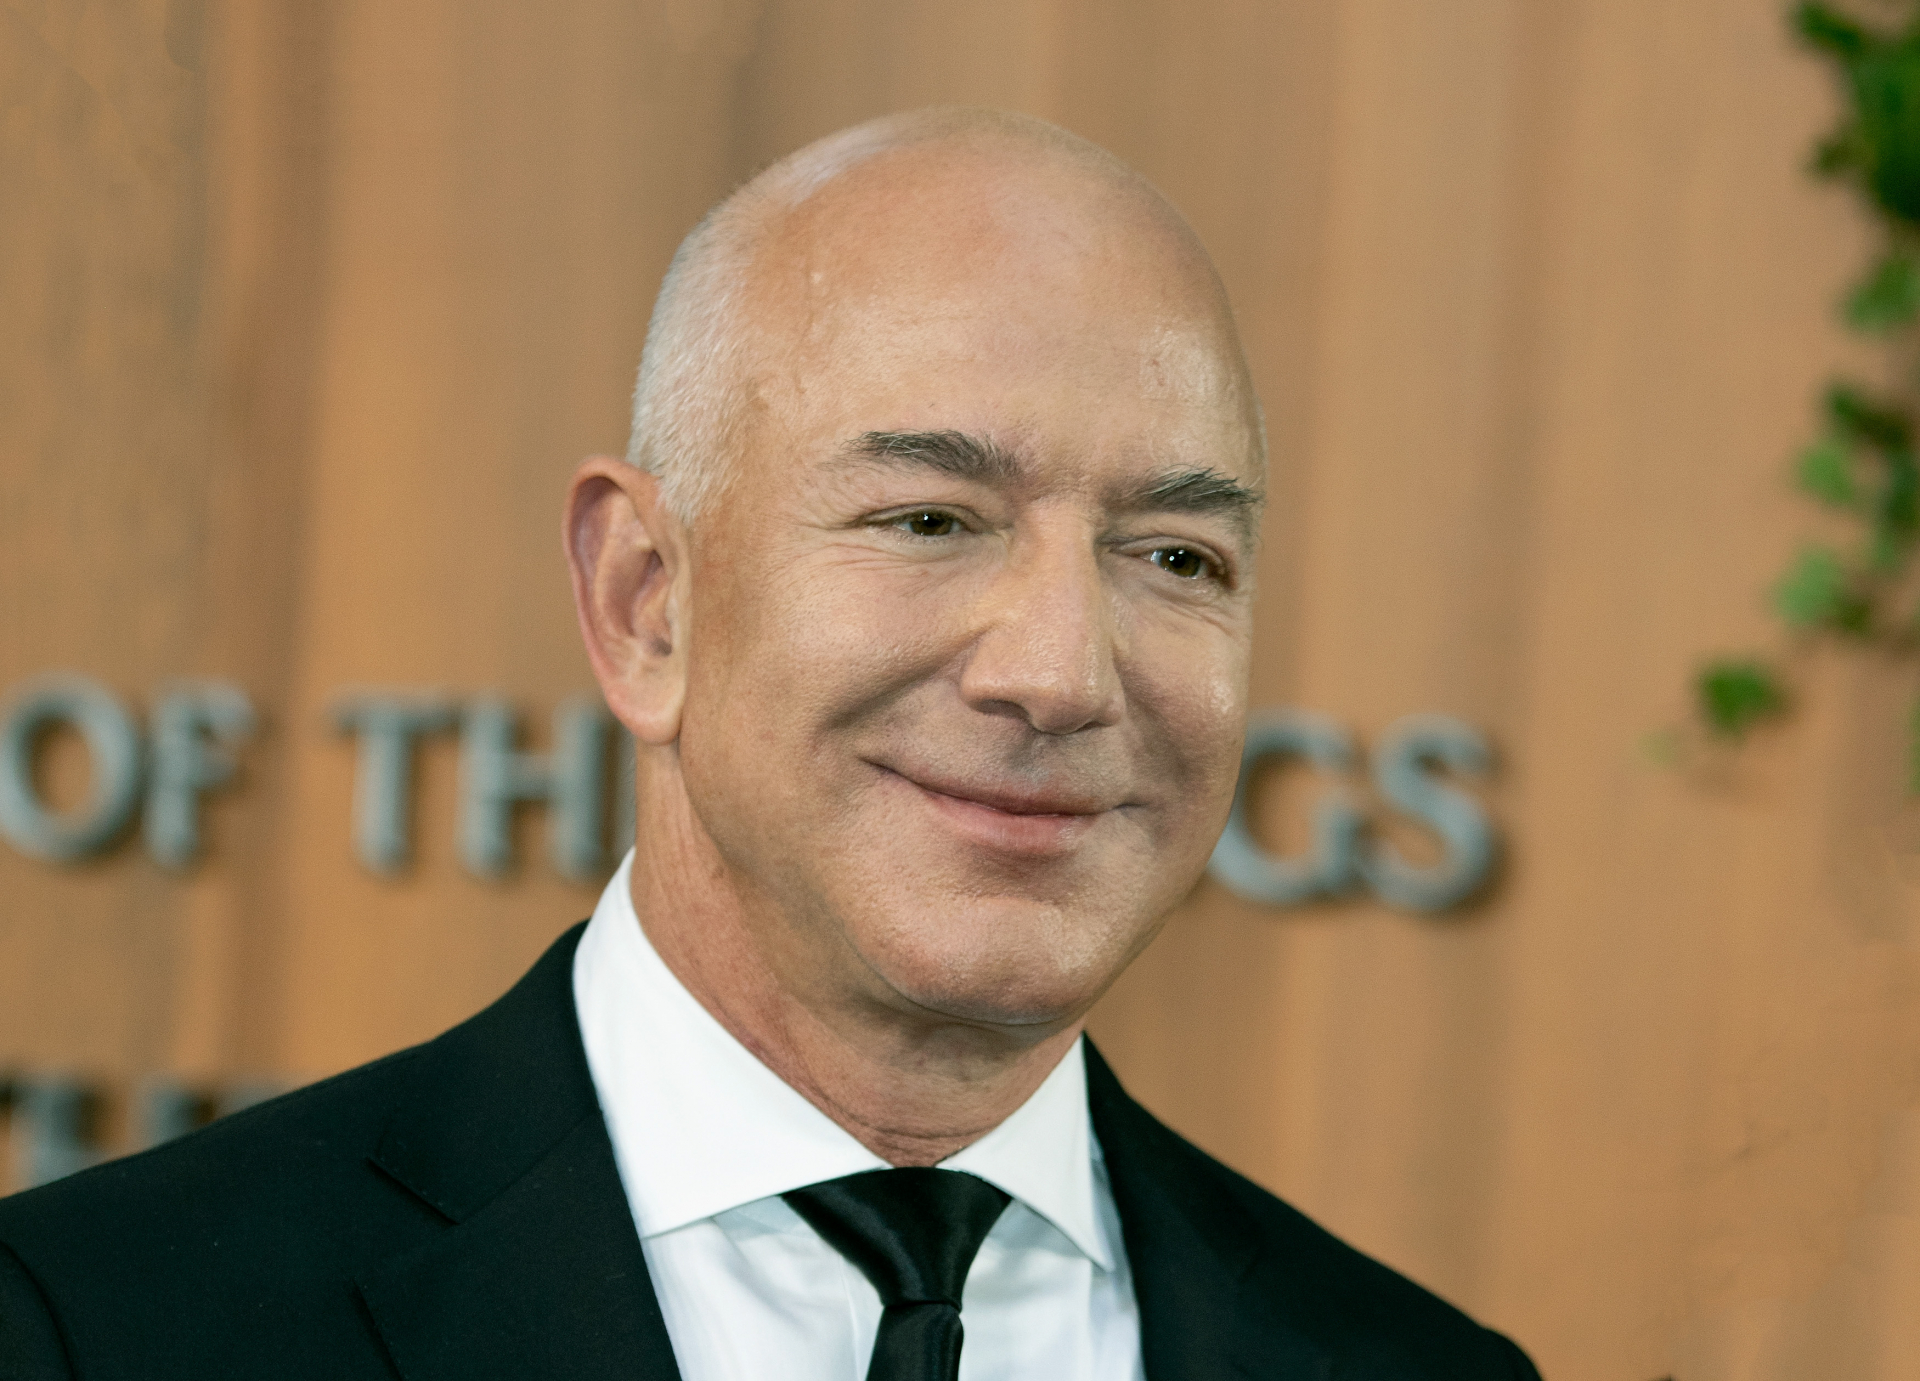 Jess Bezos 124 Milyar Dolarlık Servetinin Çoğunu Bağışlıyor